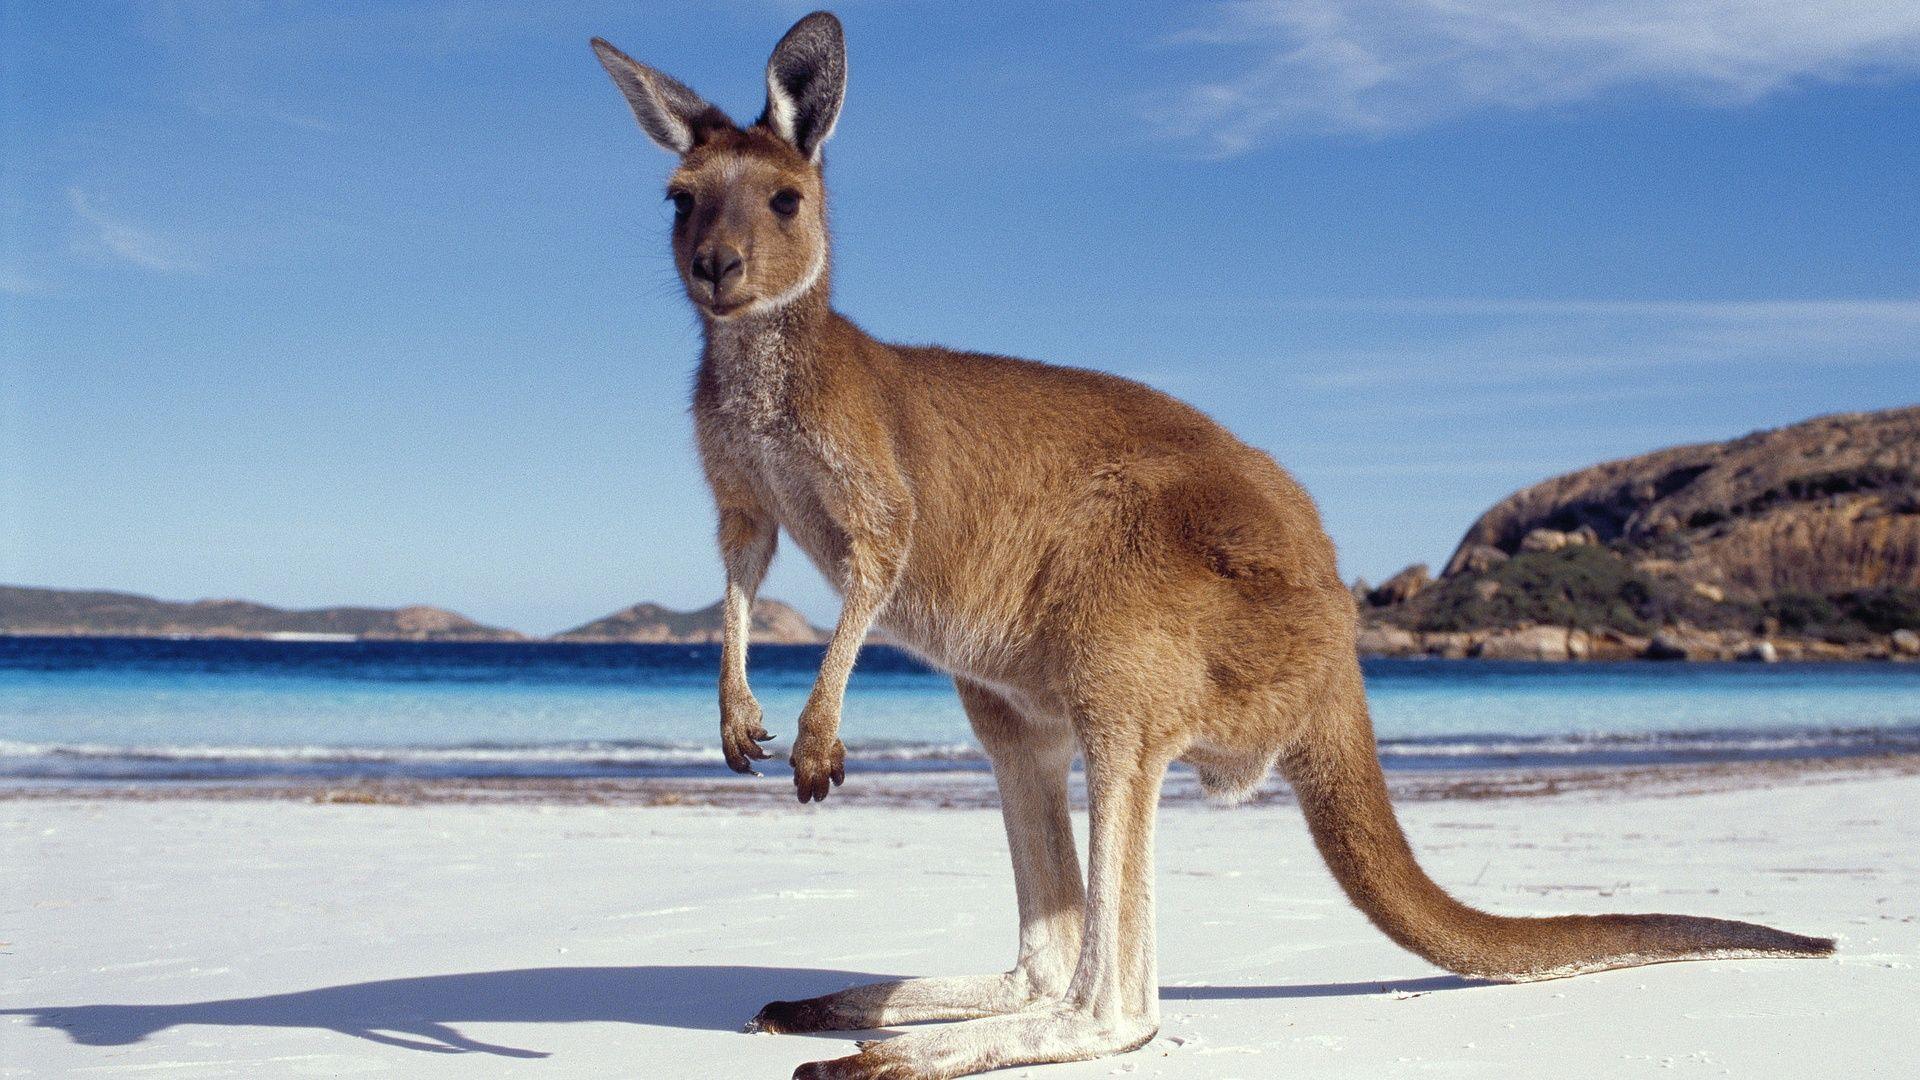 Kangaroo HD Wallpaper. Kangaroo Picture Download